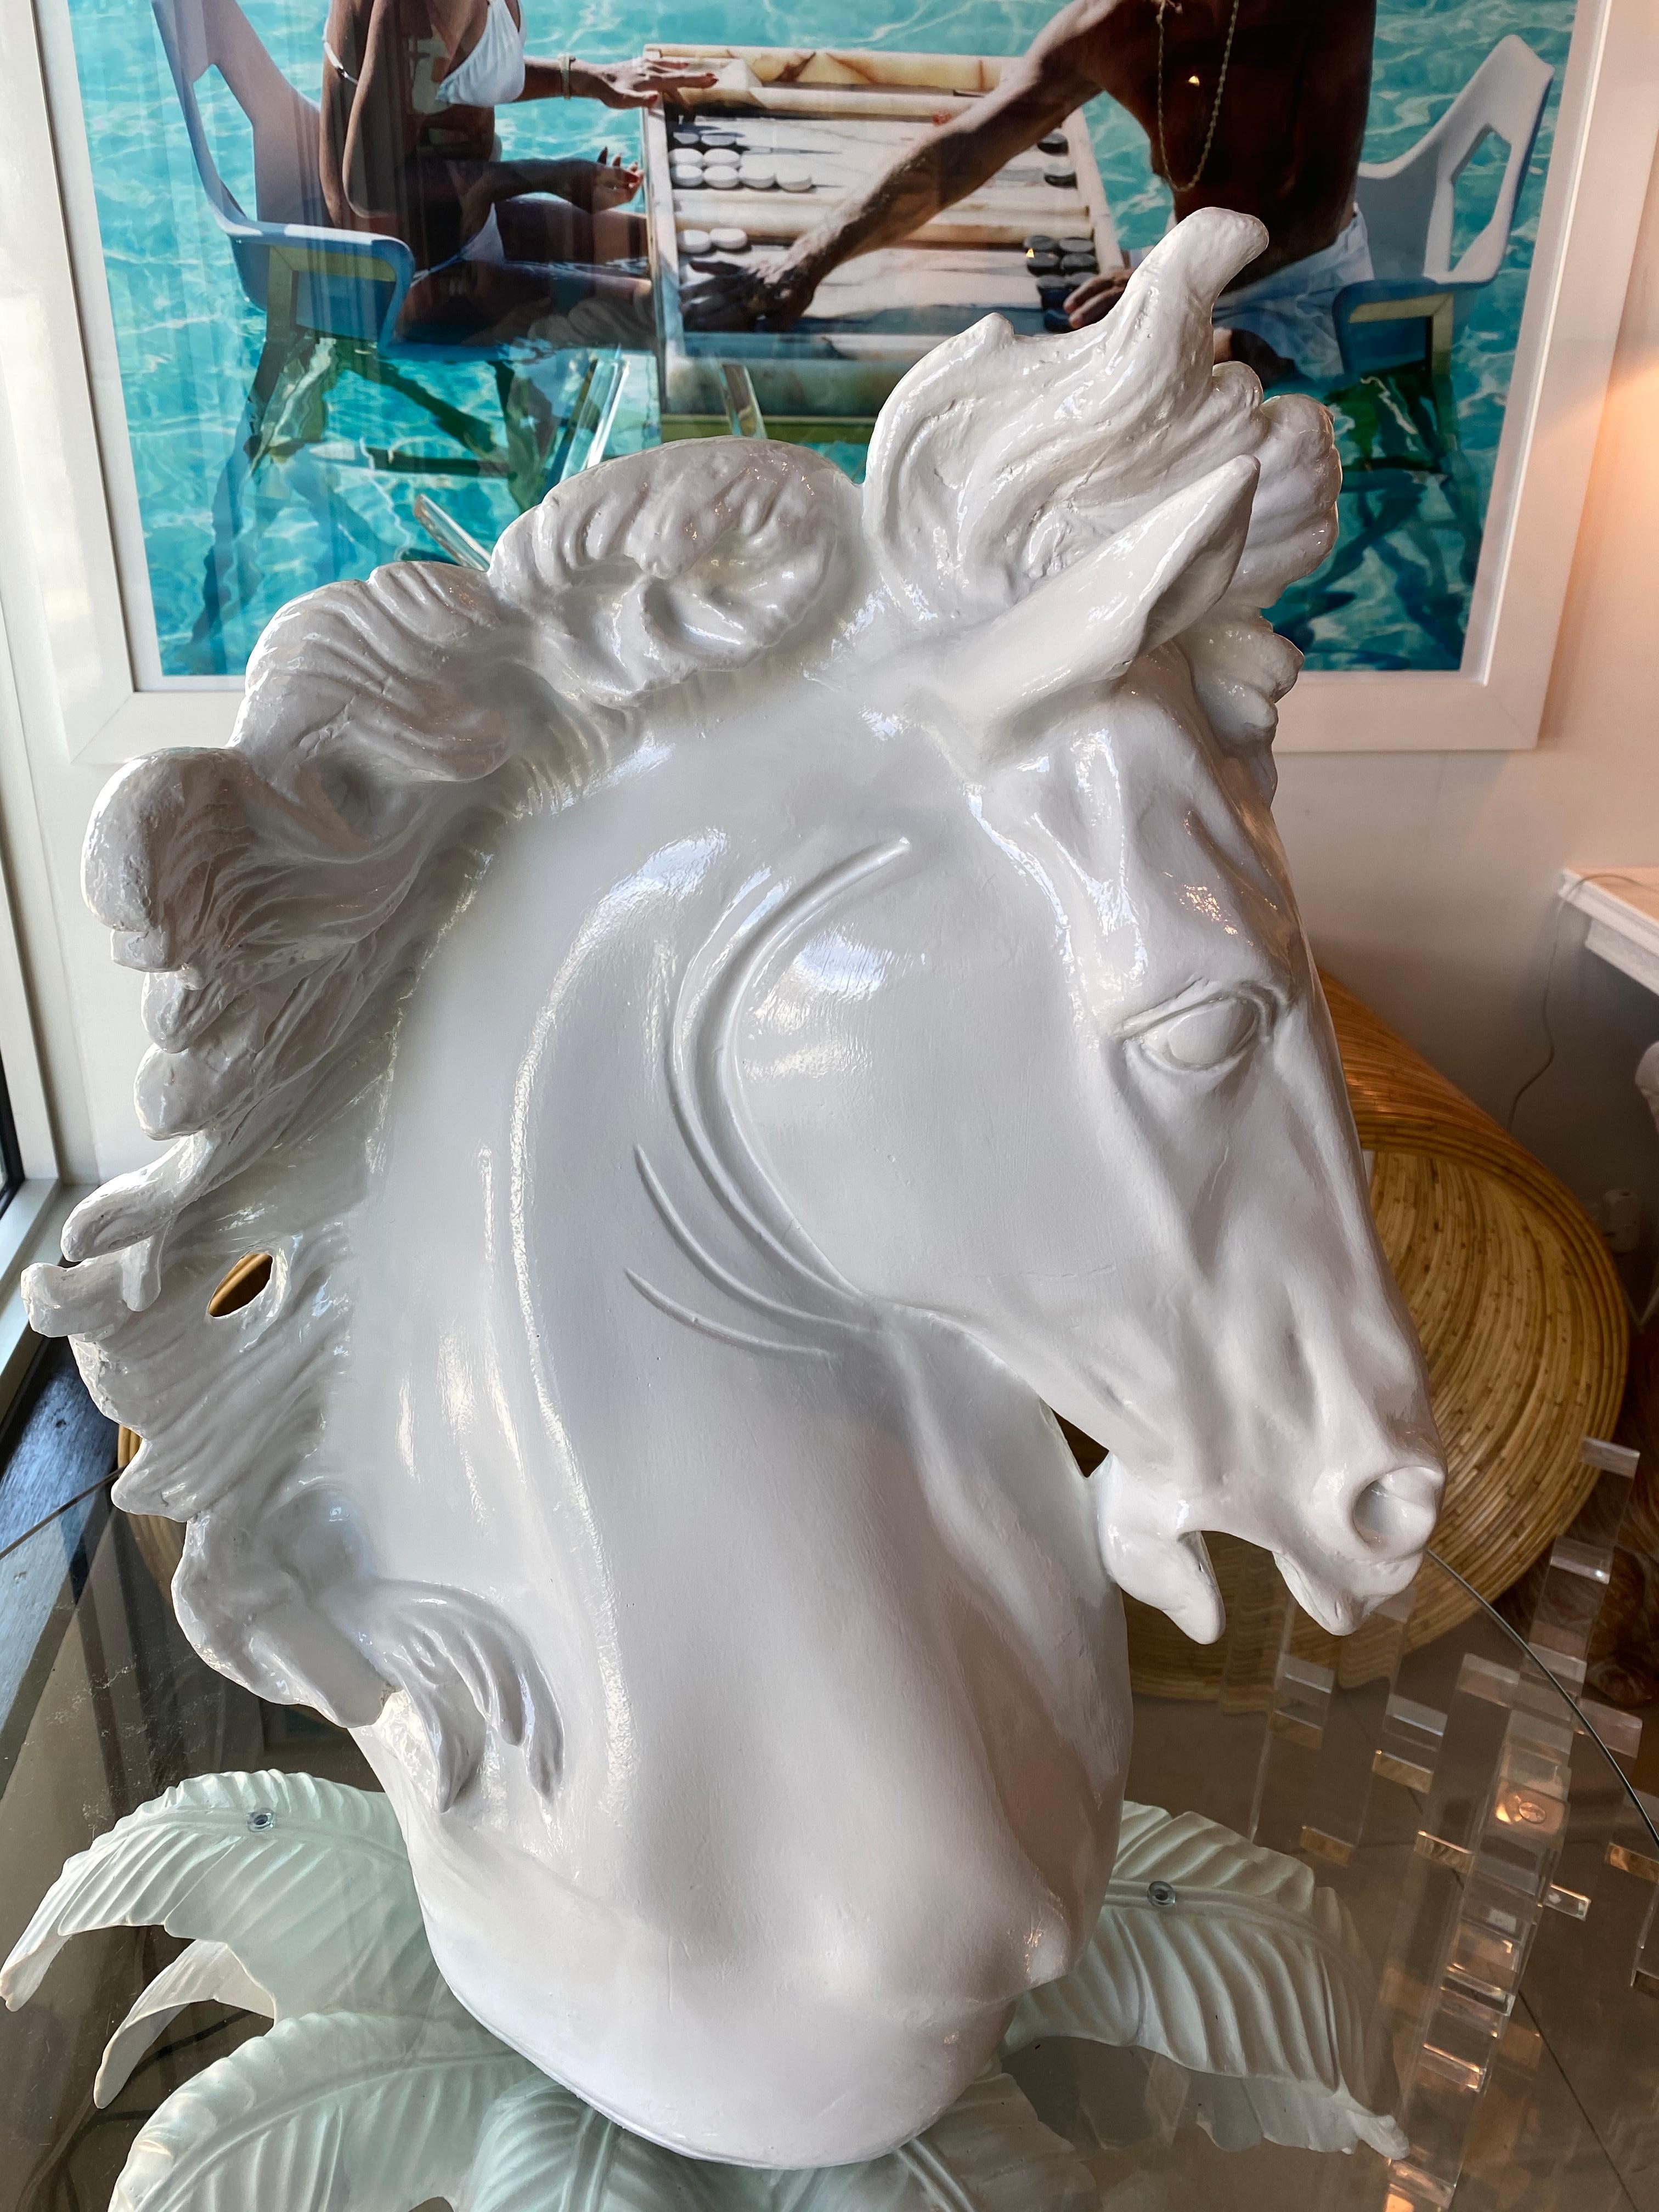 plaster horse statue